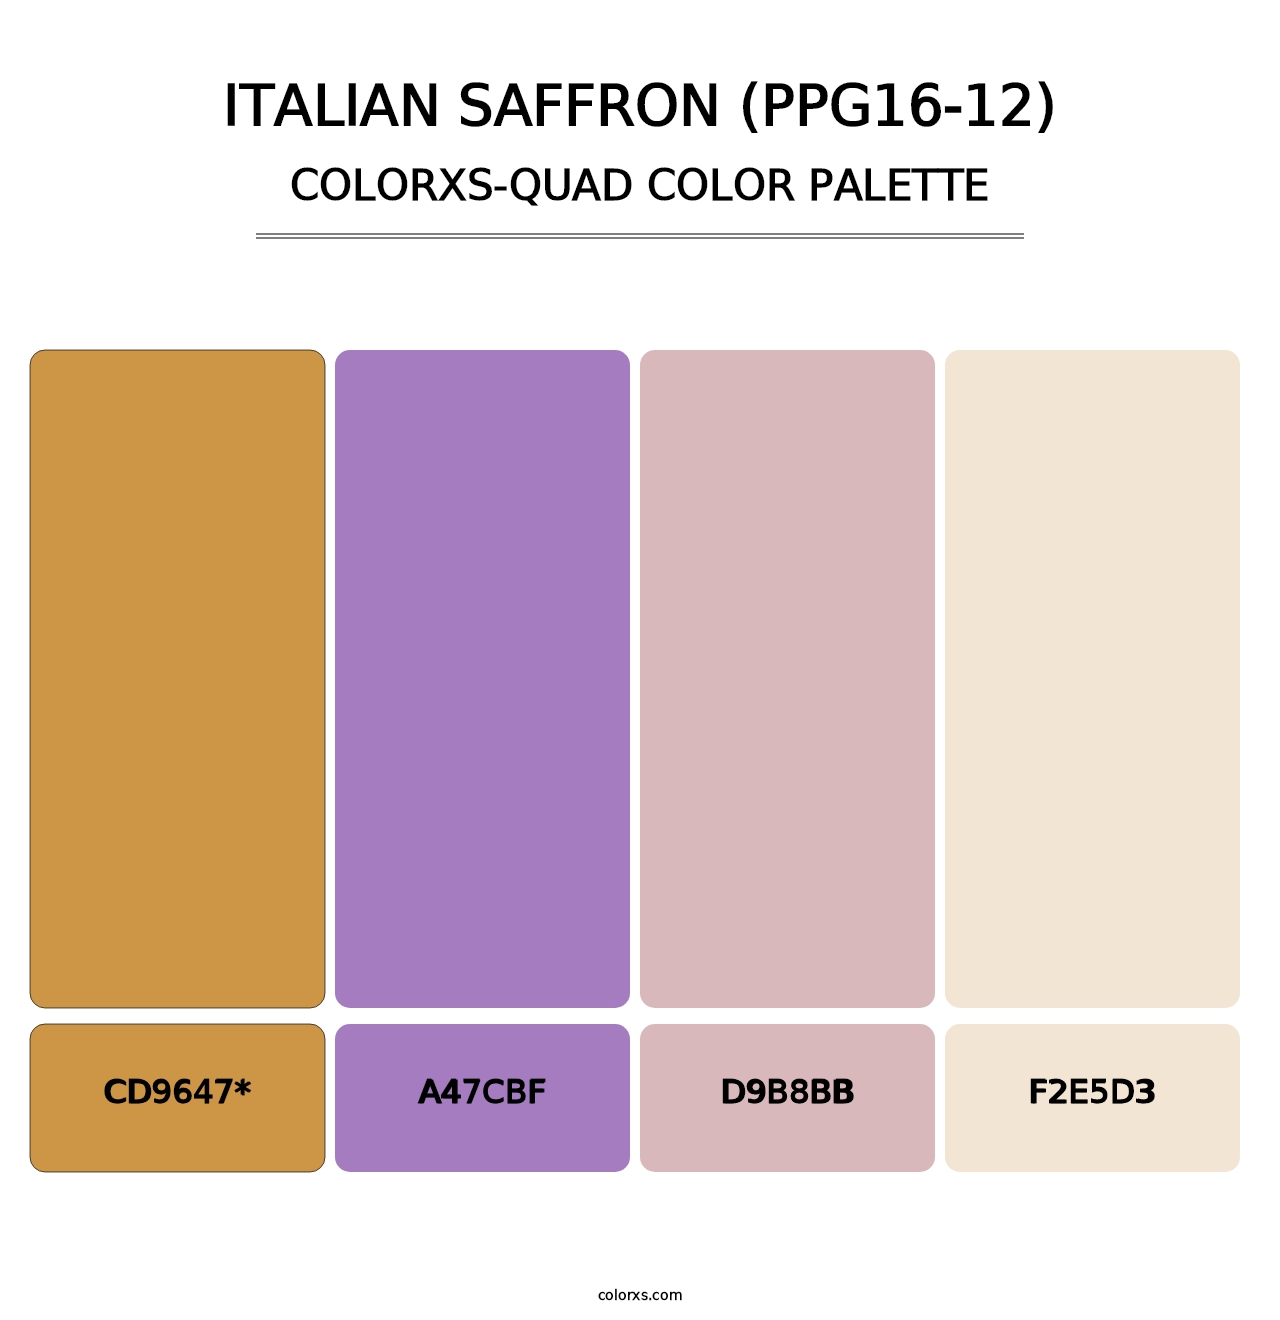 Italian Saffron (PPG16-12) - Colorxs Quad Palette